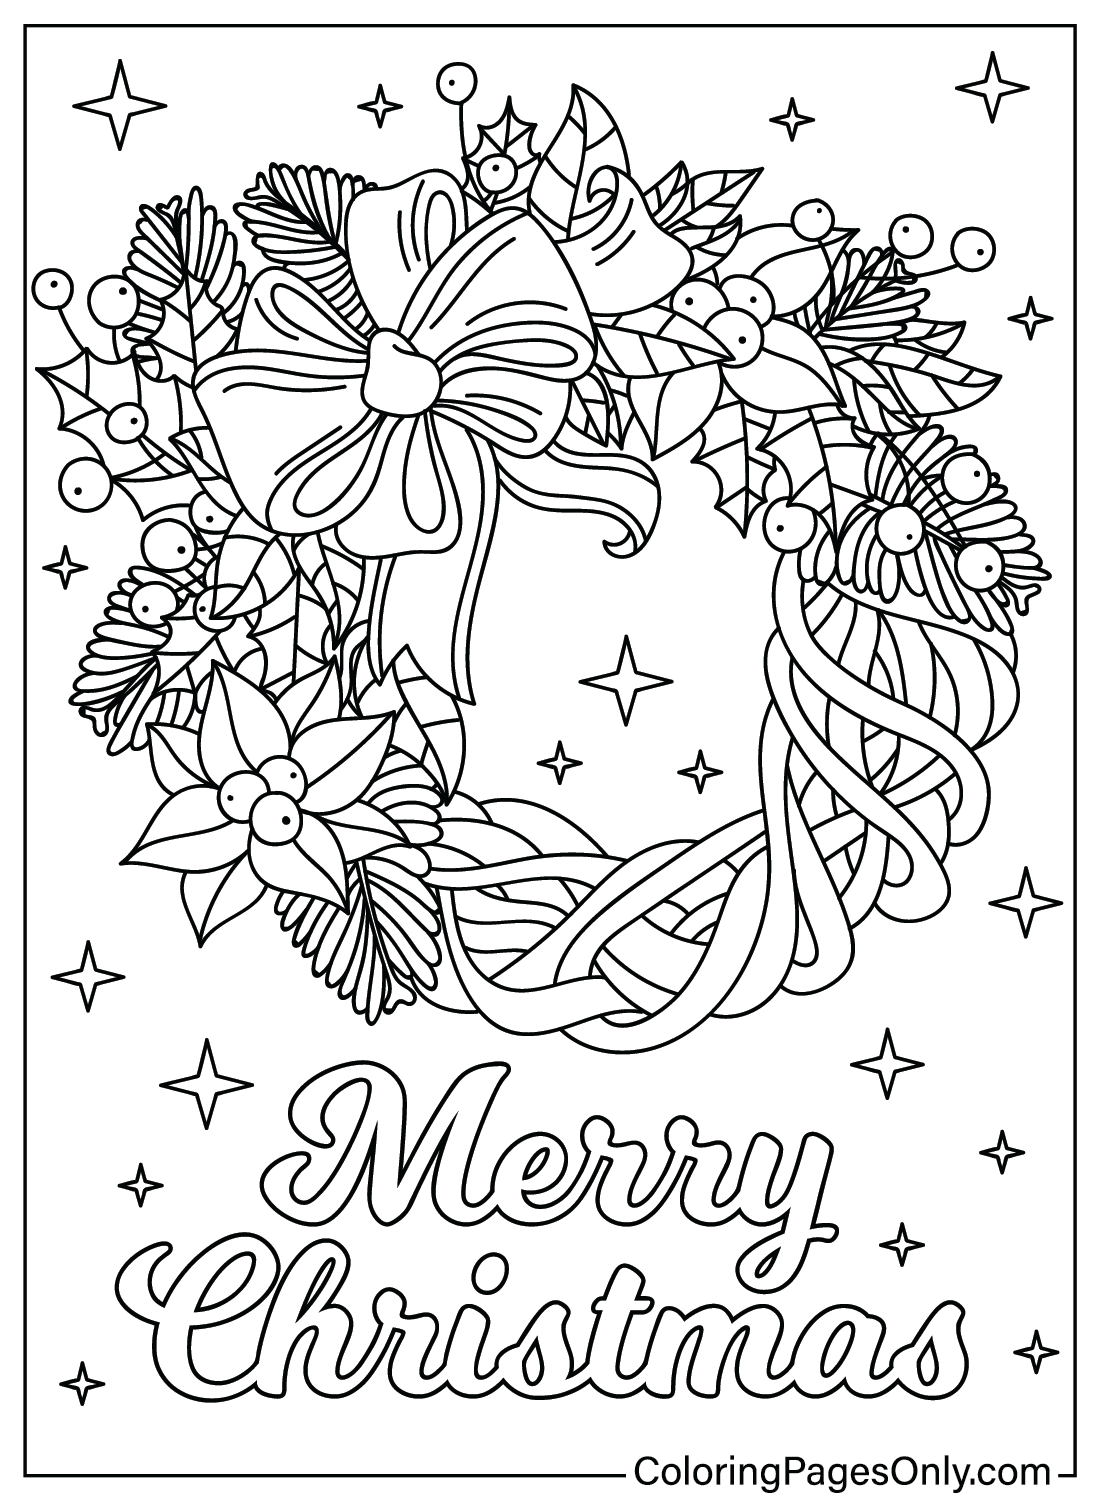 Página para colorear de corona navideña para adultos de Corona navideña